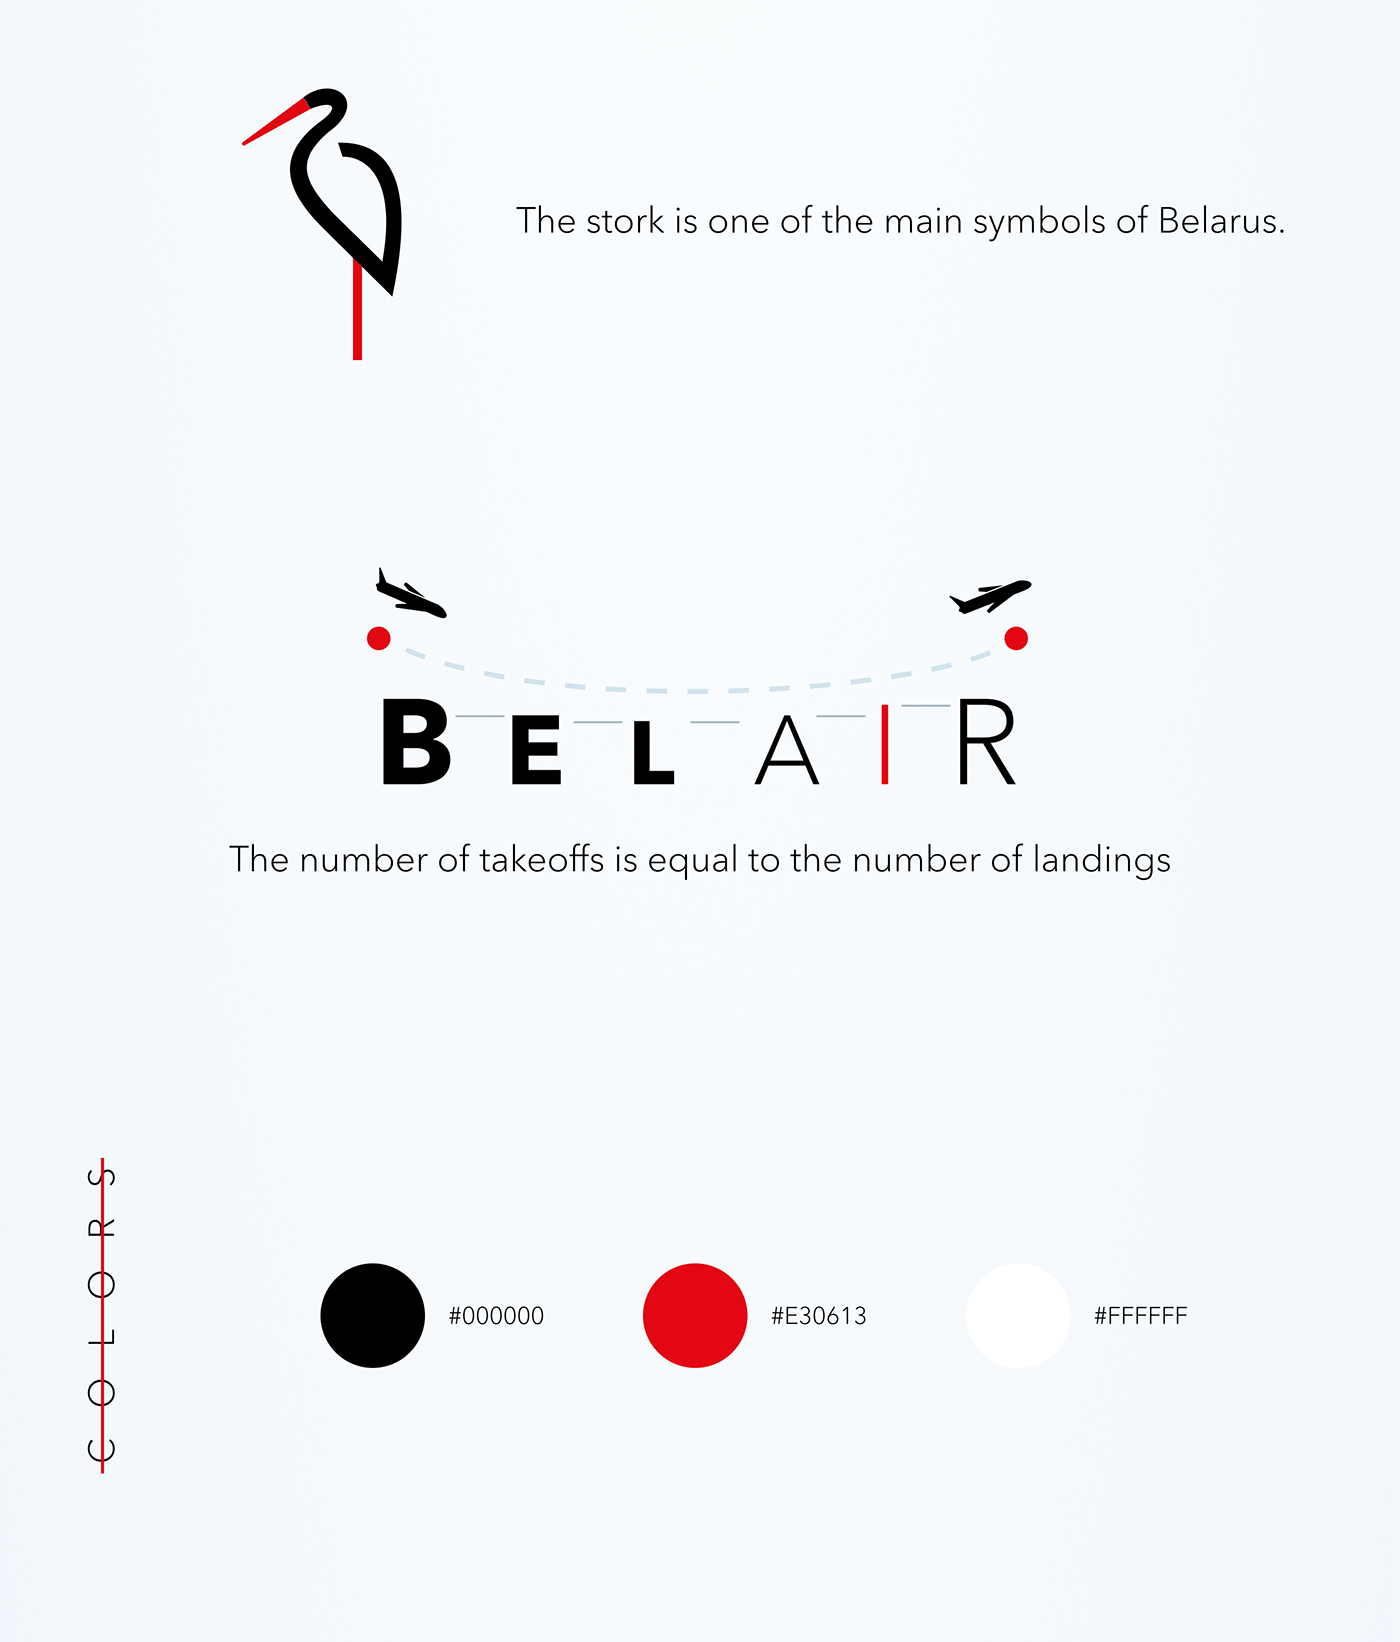 belarus Belavia branding  Illustrator logo logodesign stork